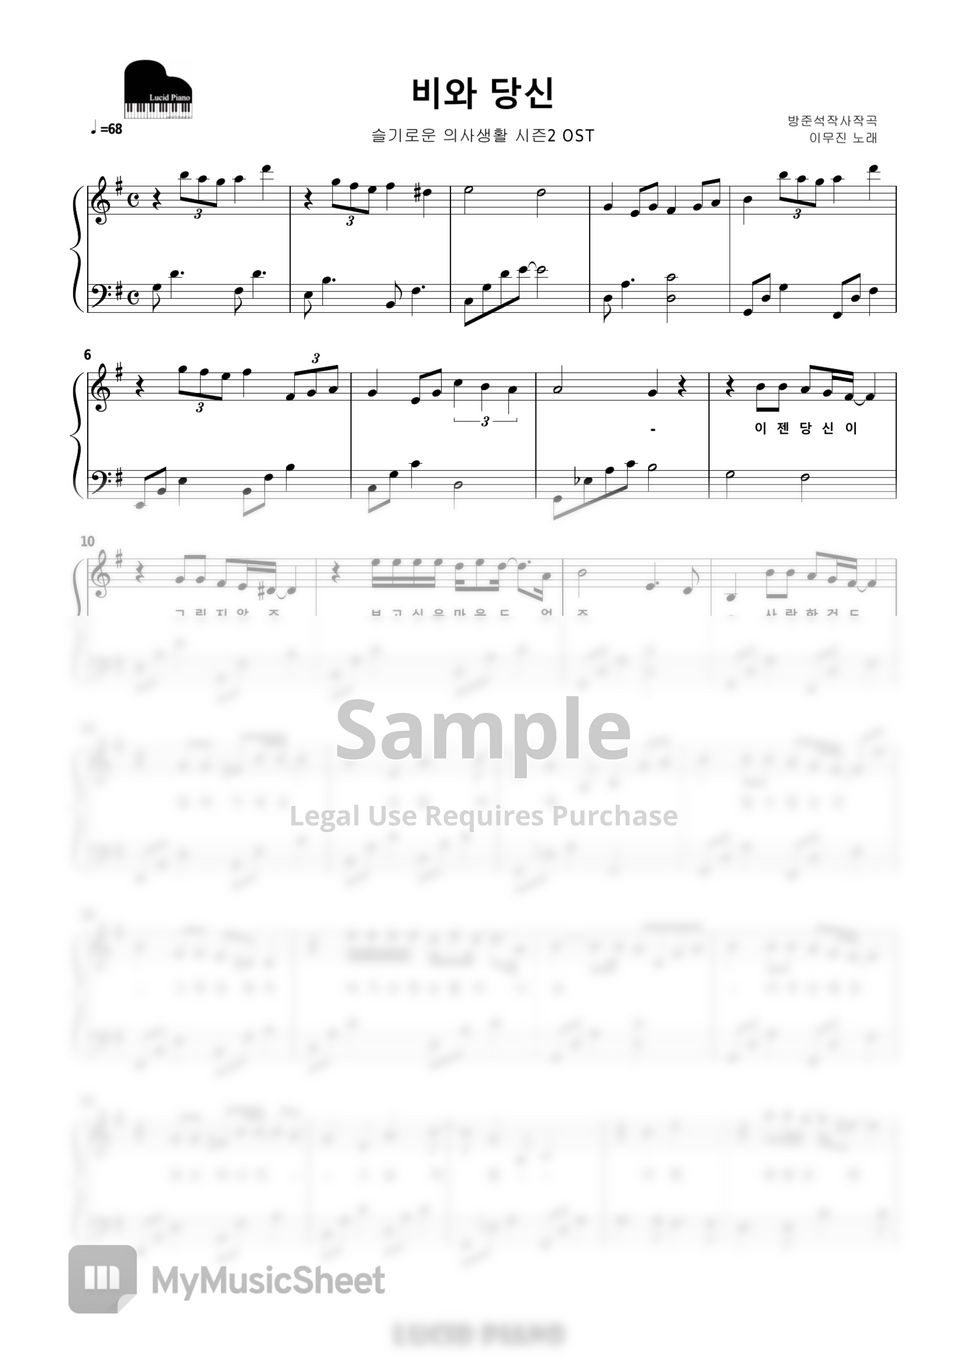 슬기로운 의사생활 2(Hospital Playlist 2 OST) - 12곡 모음 (Piano Collection 12 songs) by Lucid Piano